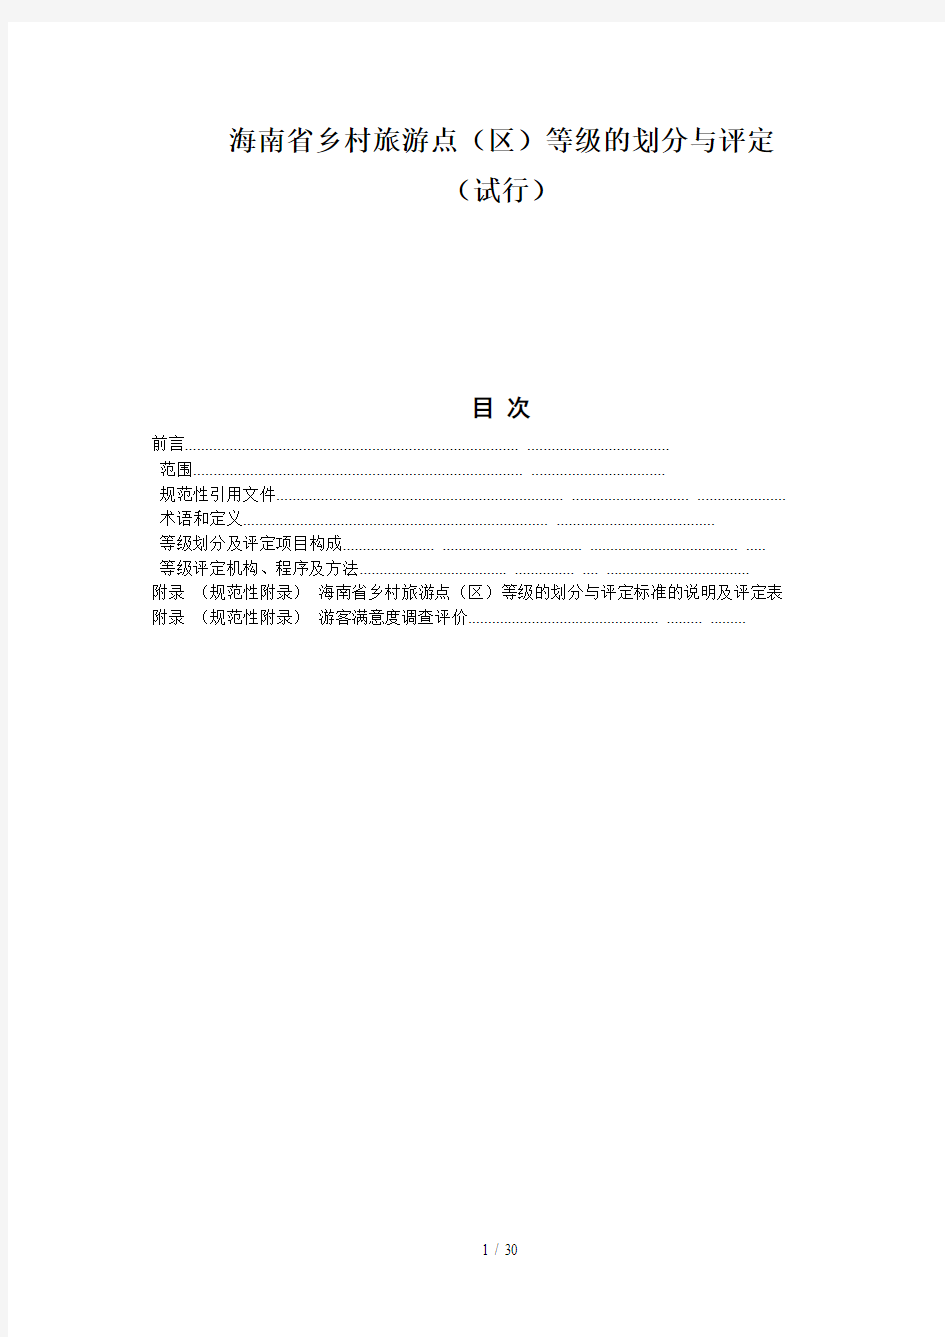 海南省乡村旅游点(区)等级的划分与评定